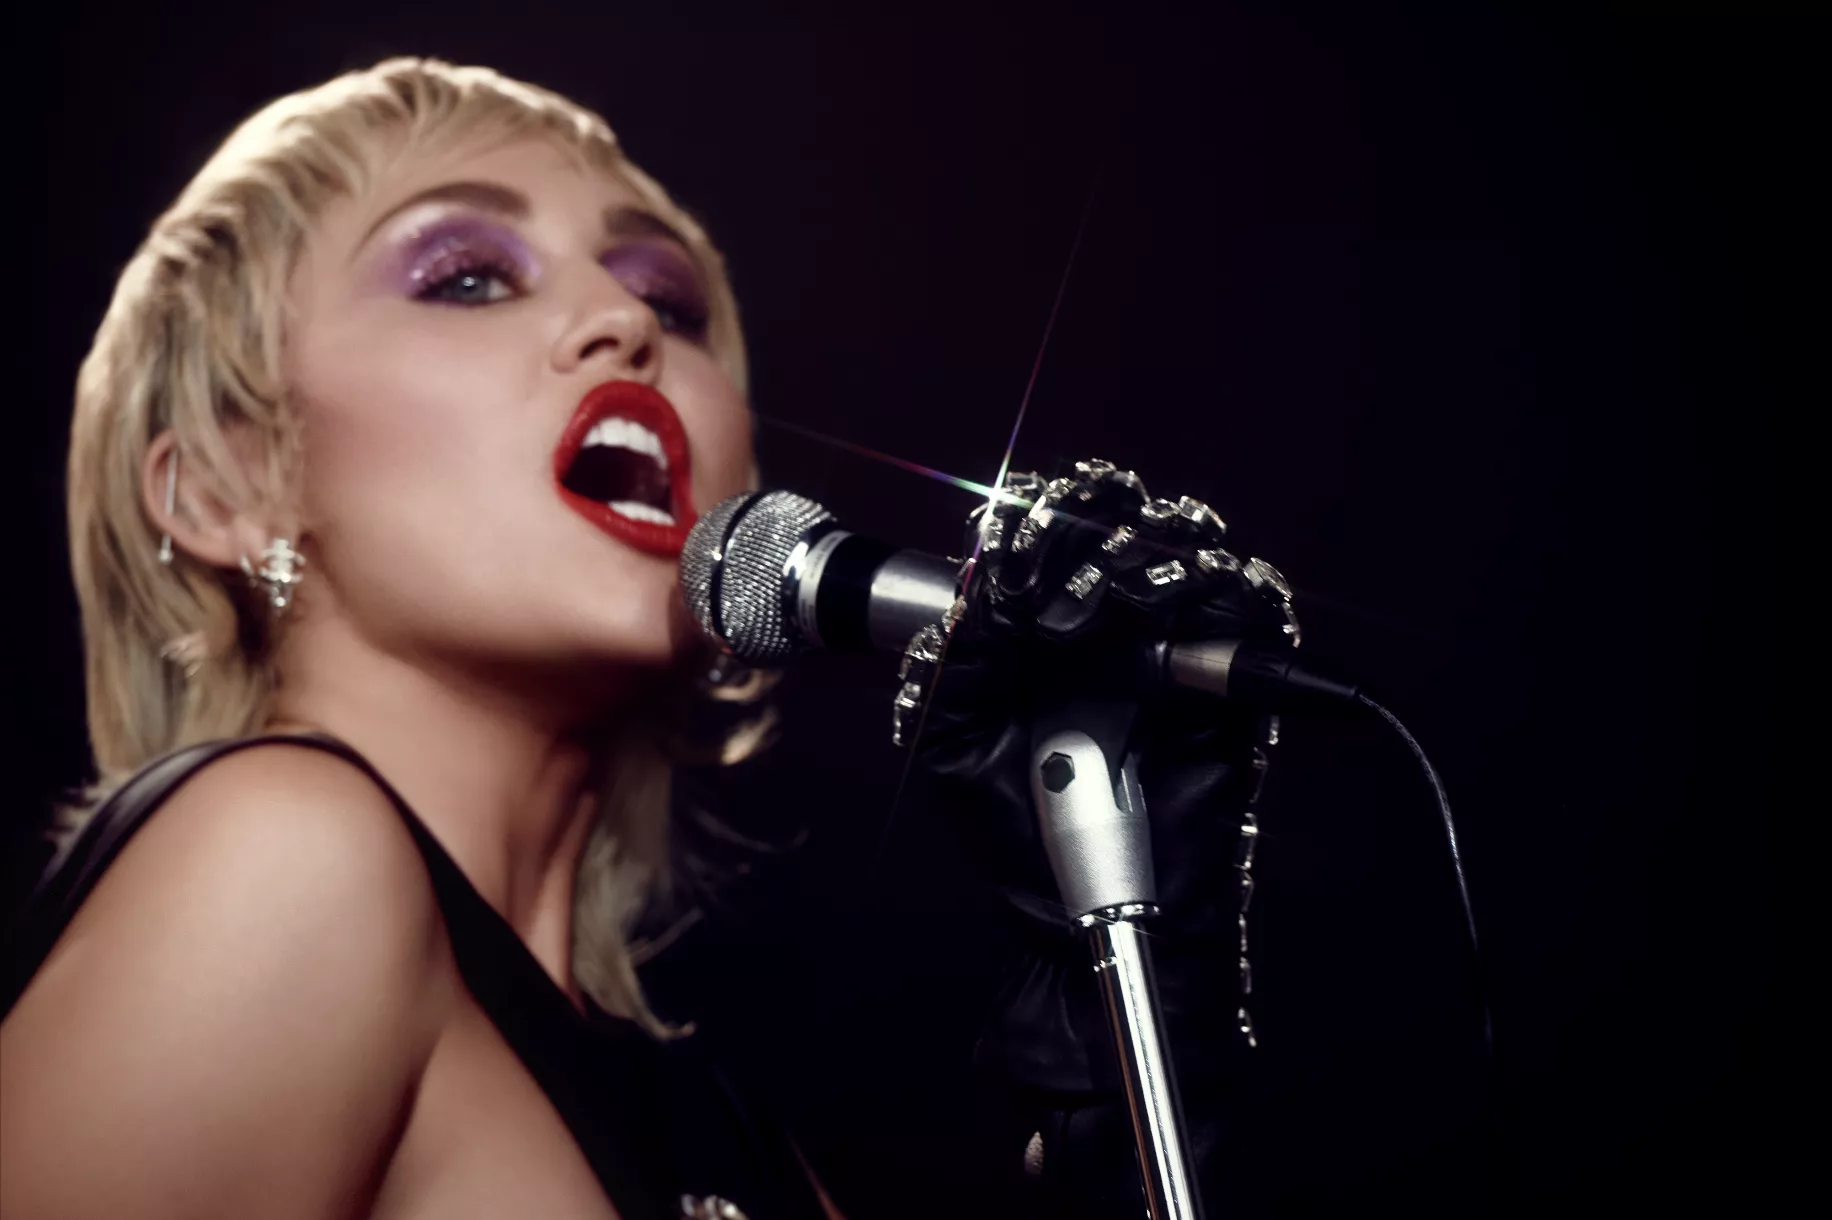 Miley Cyrus offentliggør nyt album: "Mit hjem brændte ned"